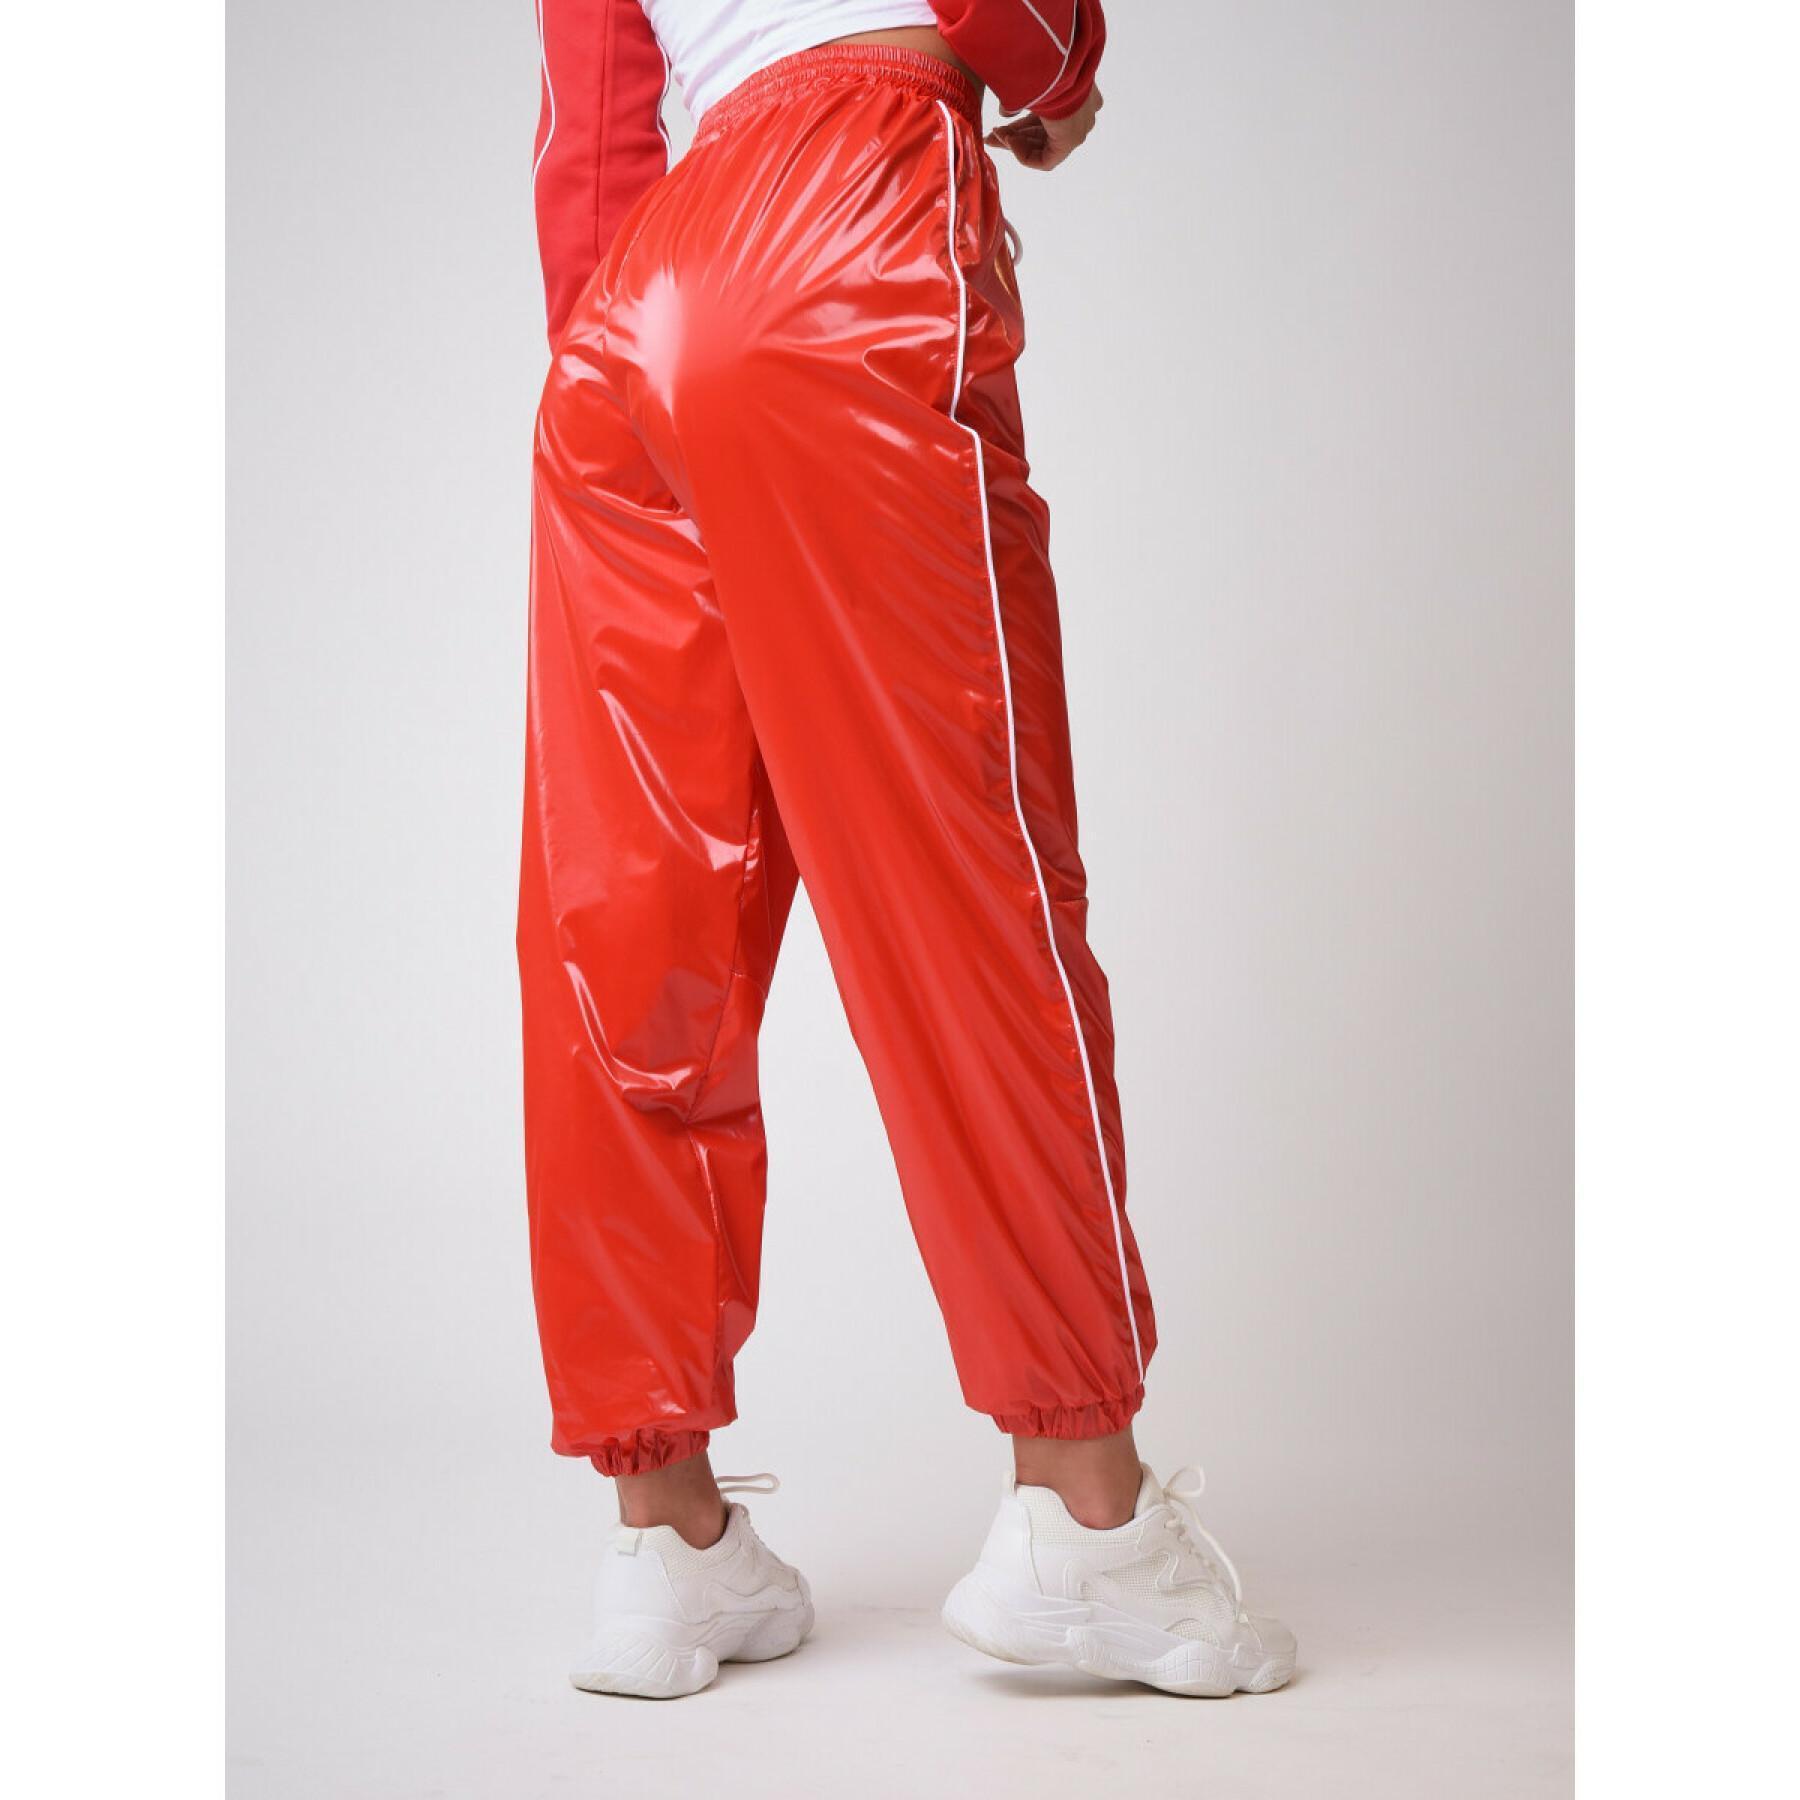 Women's vinyl effect jogging suit Project X Paris